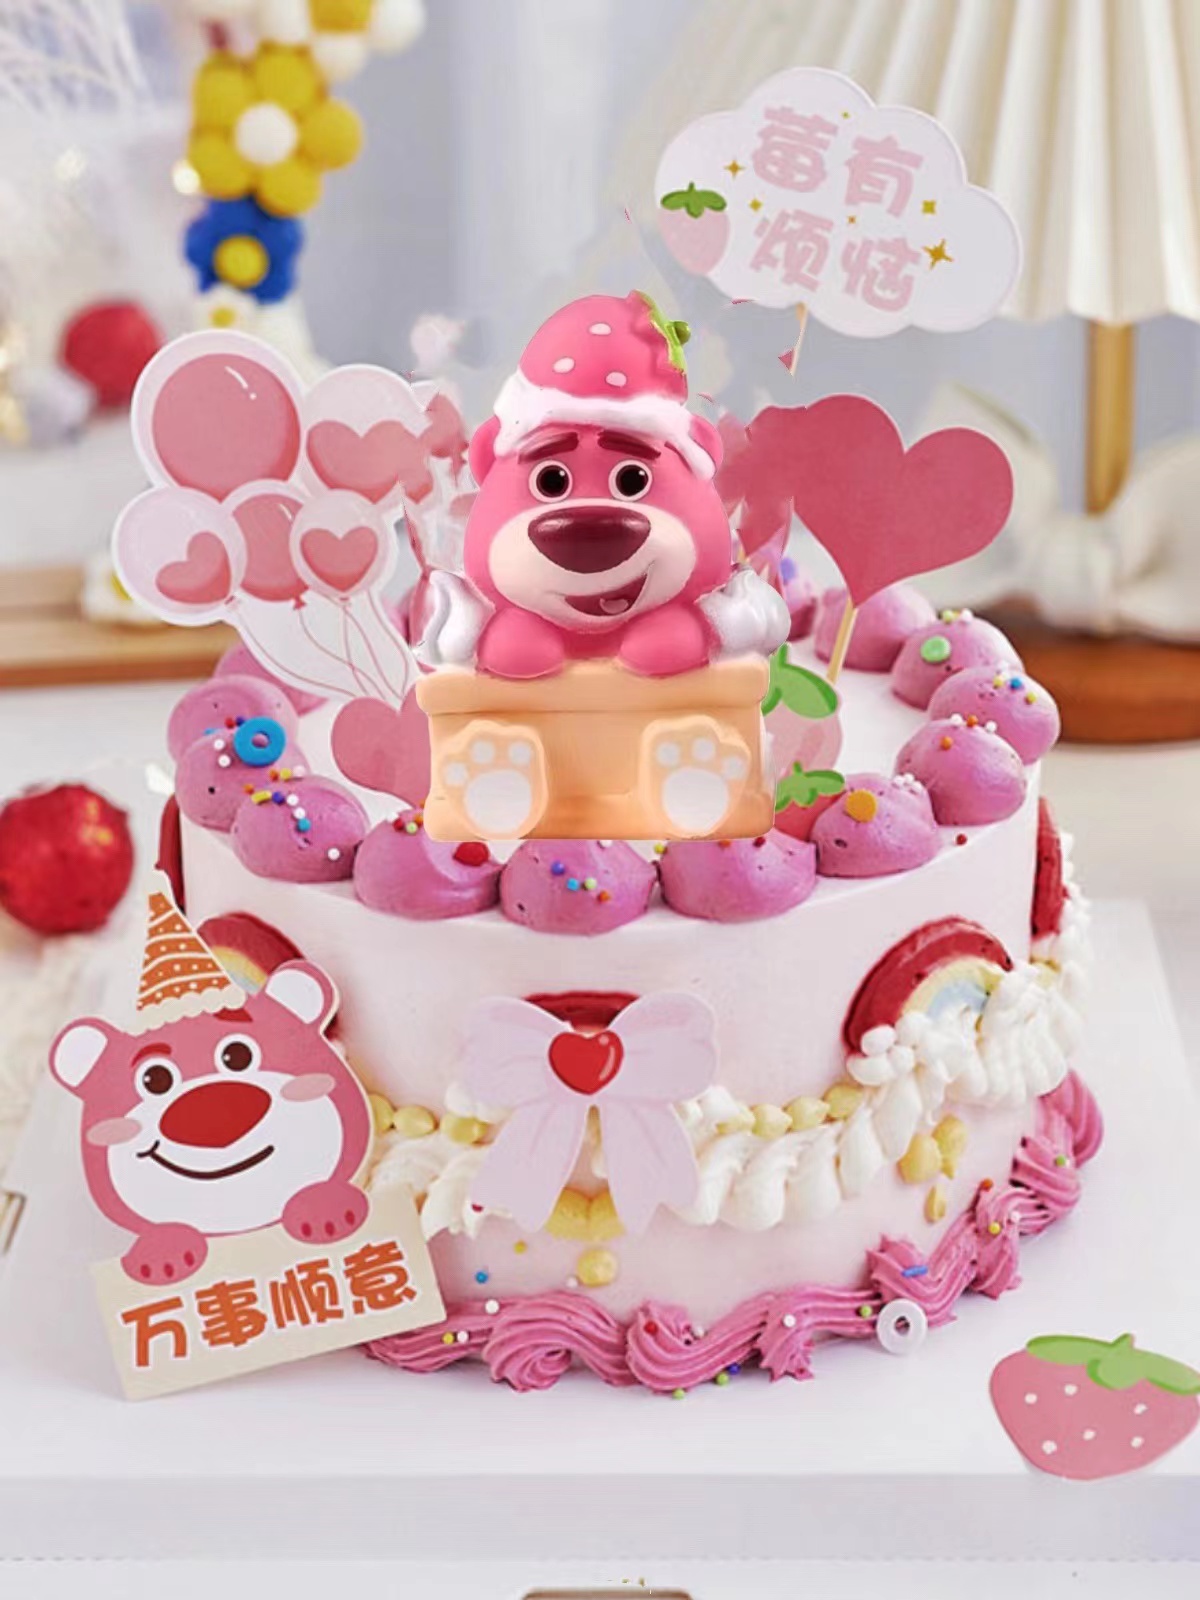 吃草莓的小熊蛋糕装饰插牌插件套装卡通儿童生日派对烘焙装扮摆件